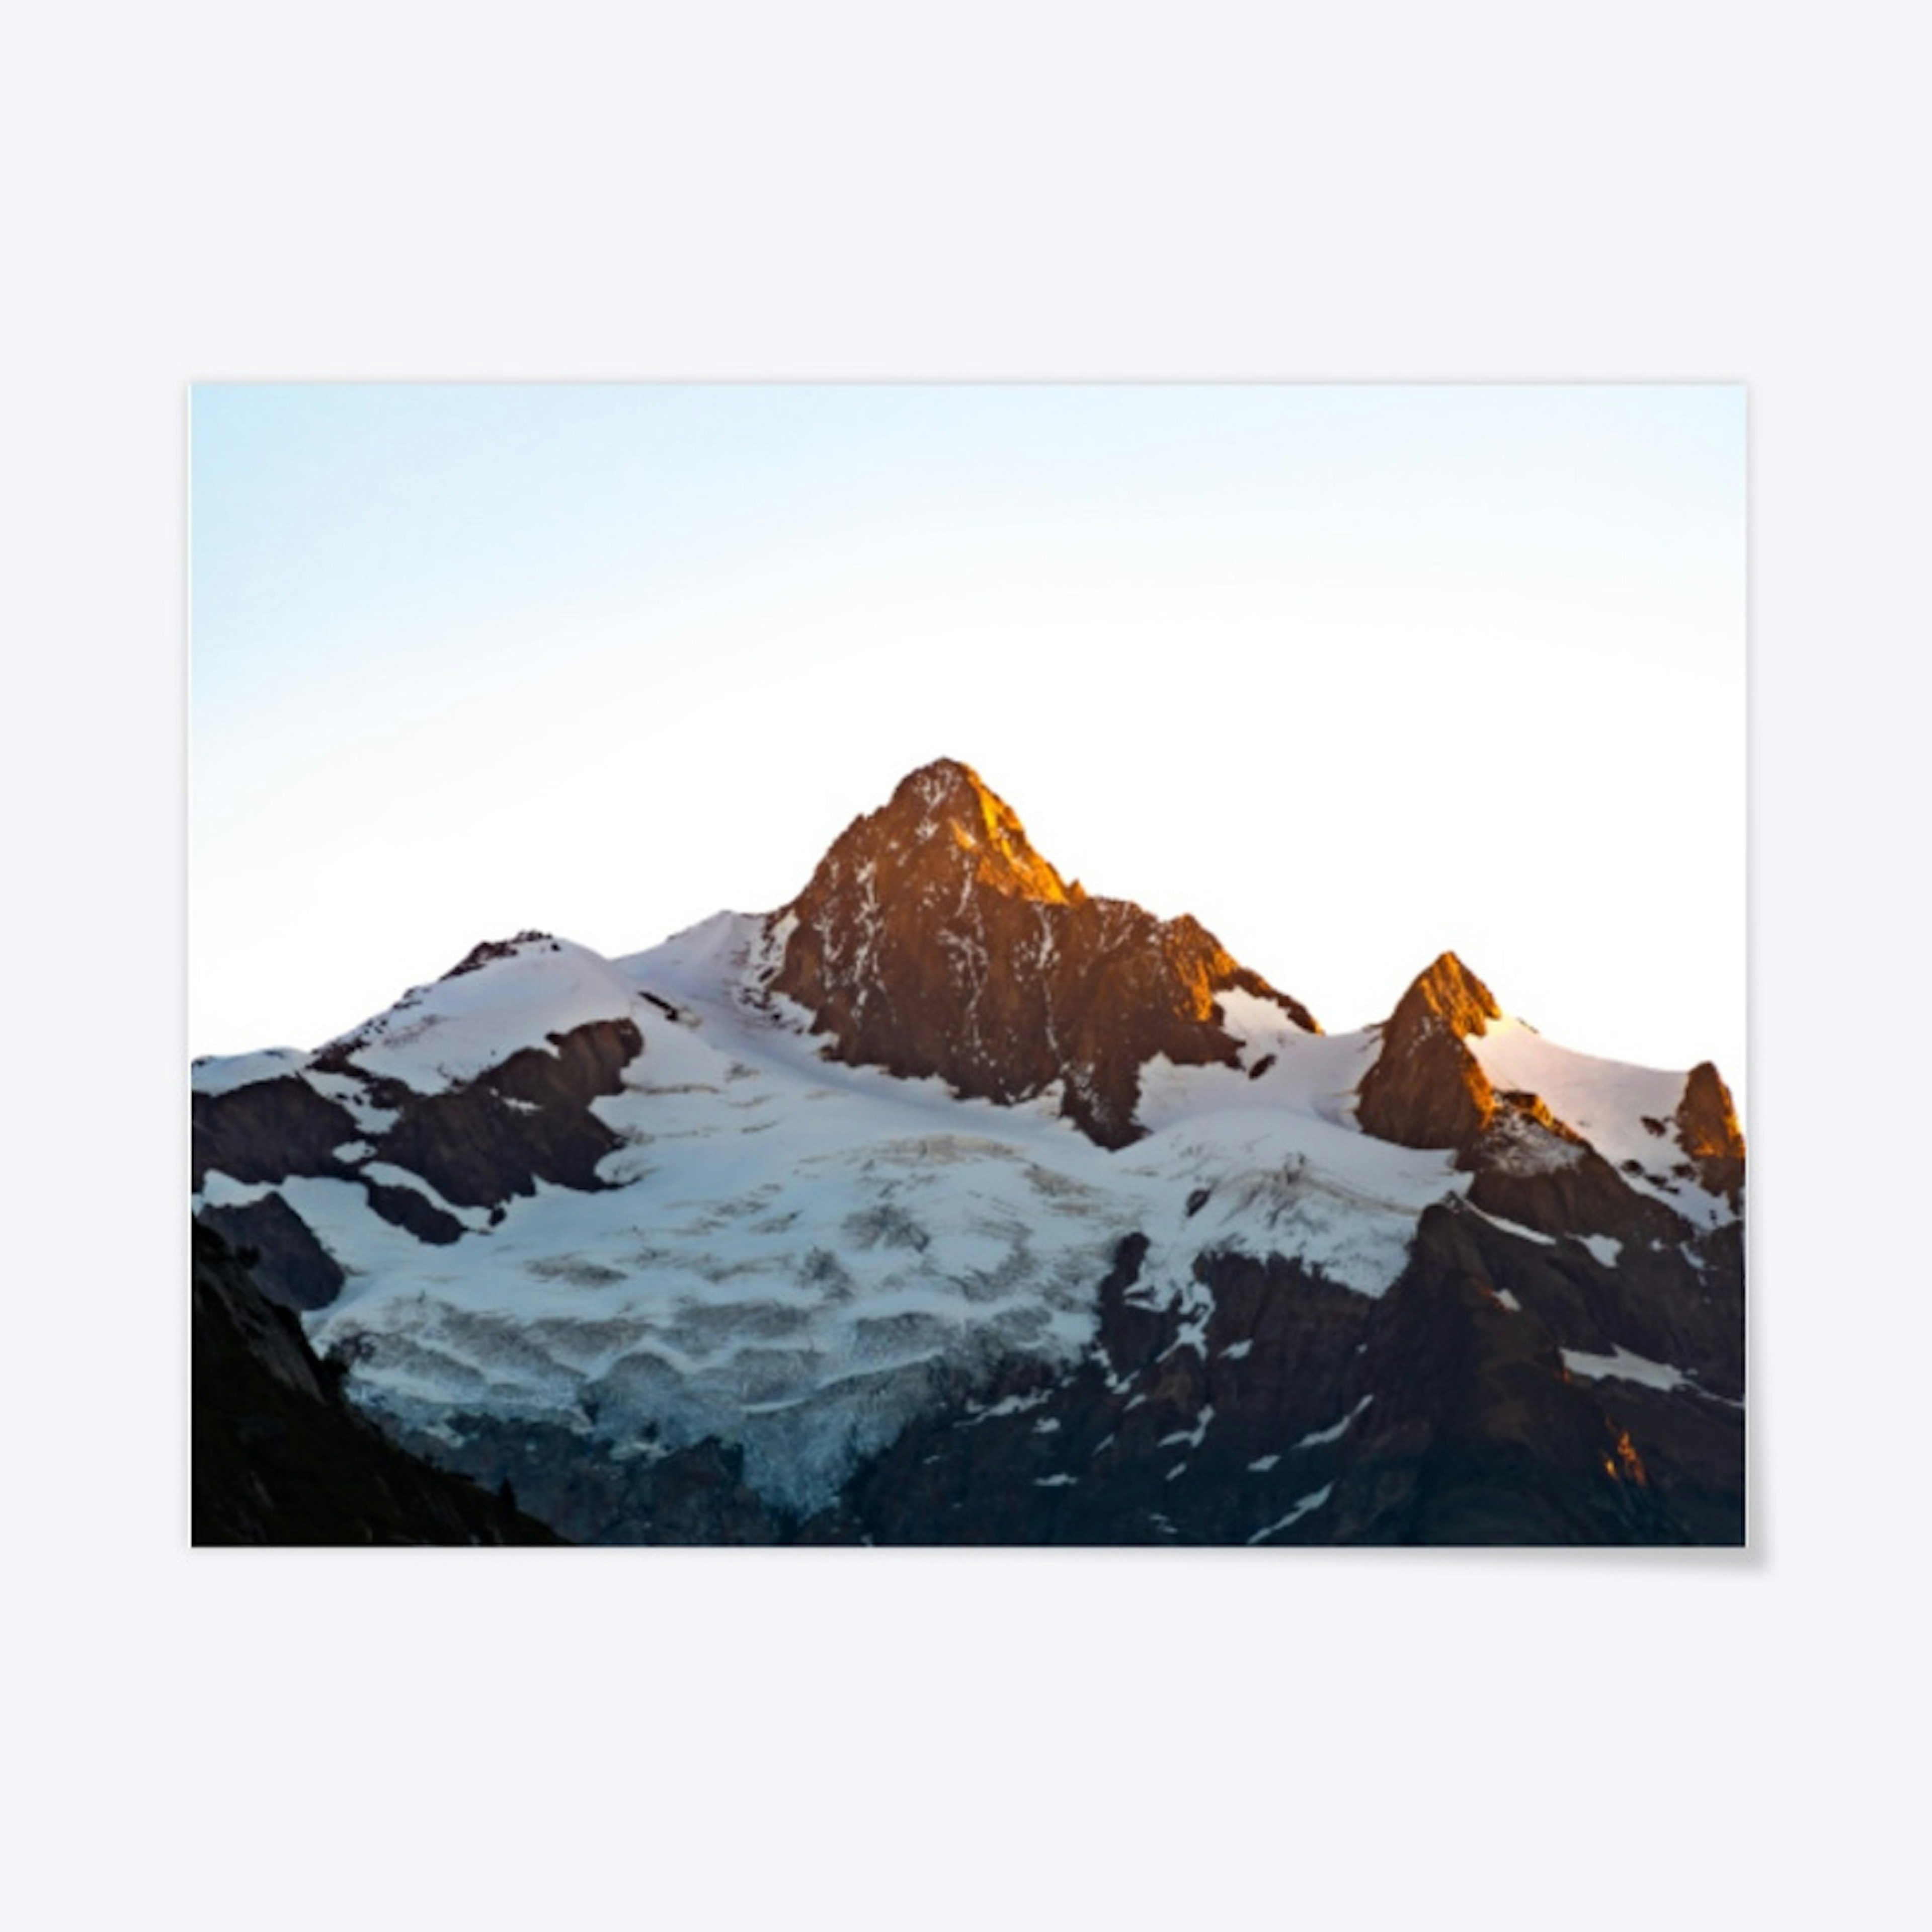 French Alps - Aiguille des Glaciers